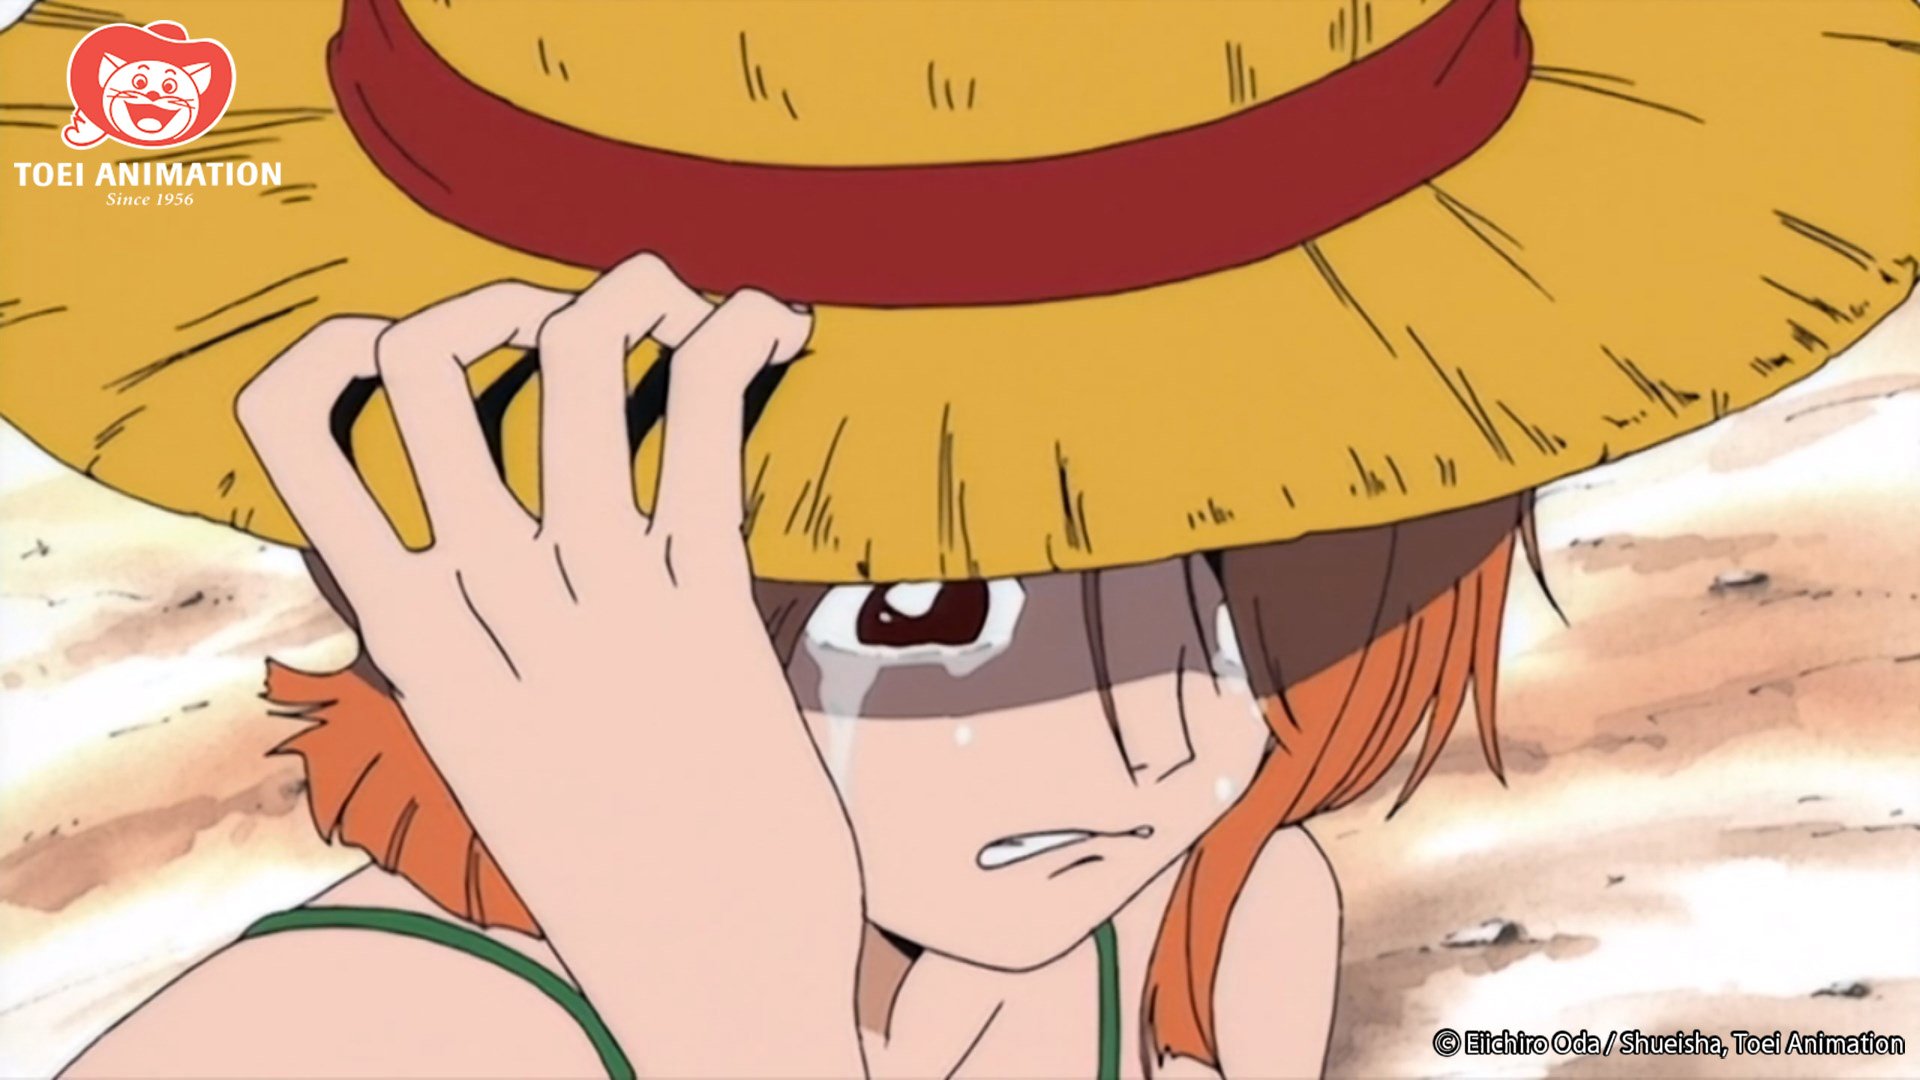 Argumentos de One Piece Season 2 já estão escritos